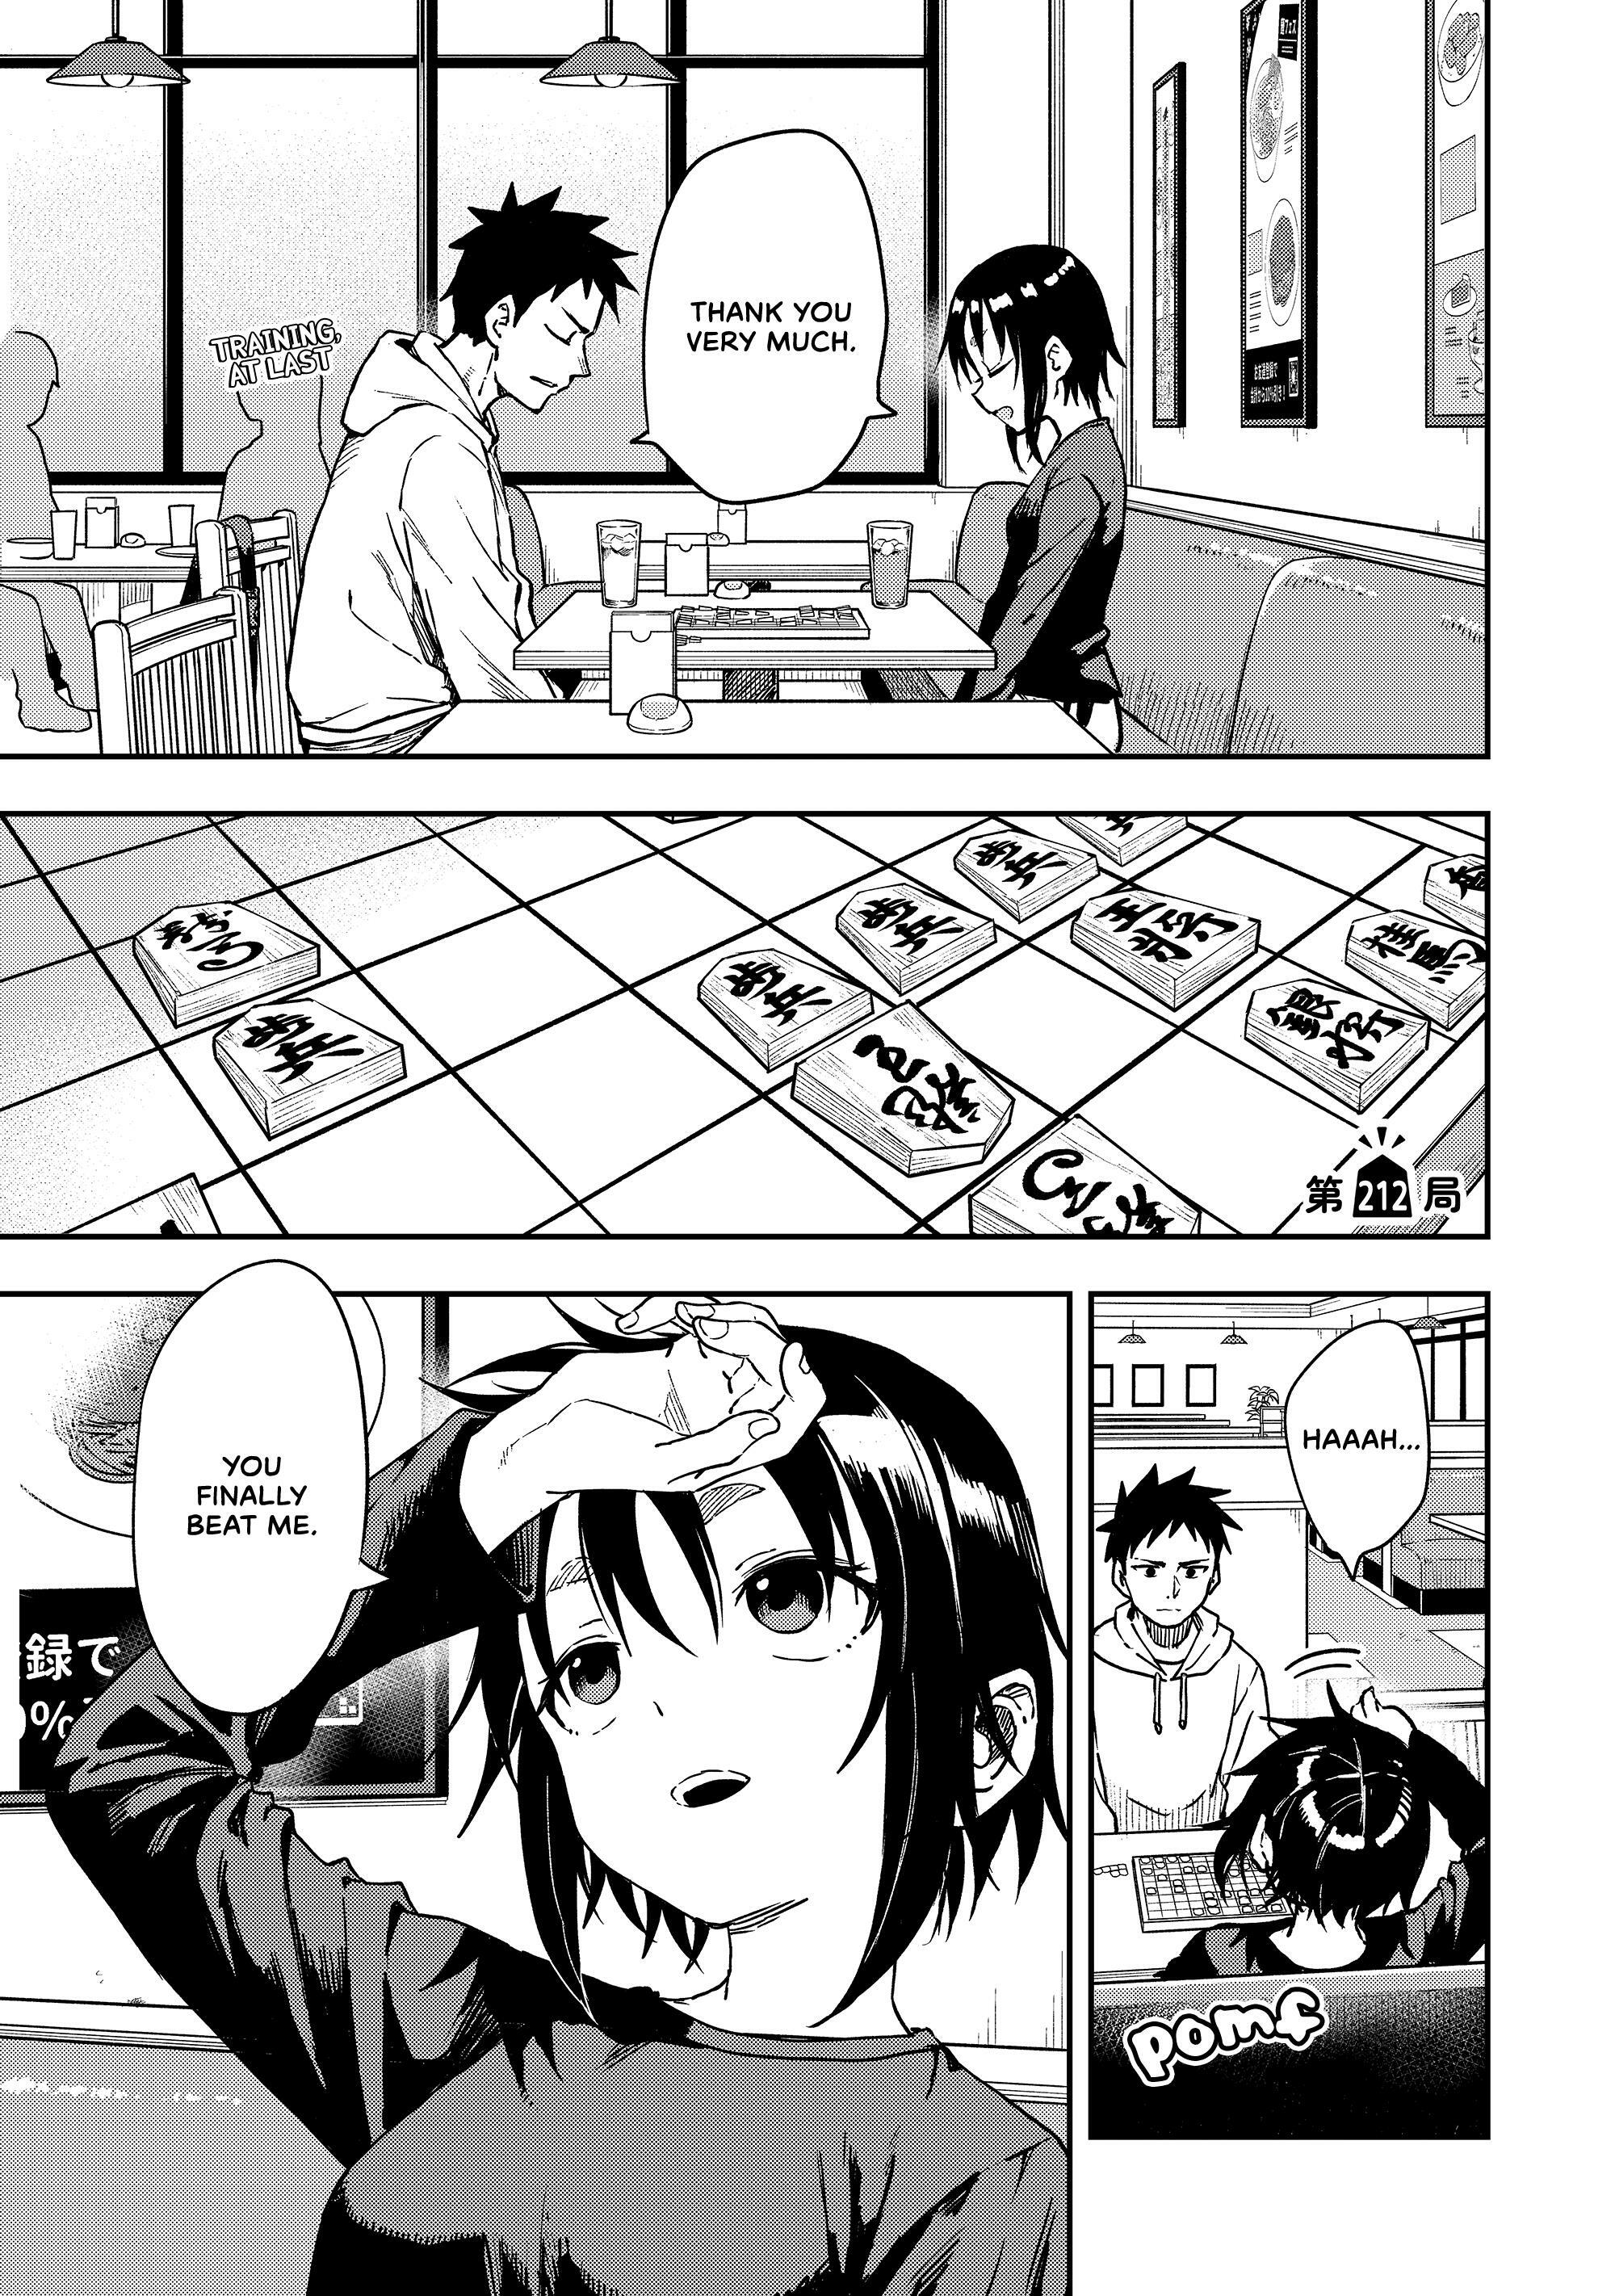 Soredemo Ayumu wa Yosetekuru Manga Chapter 91